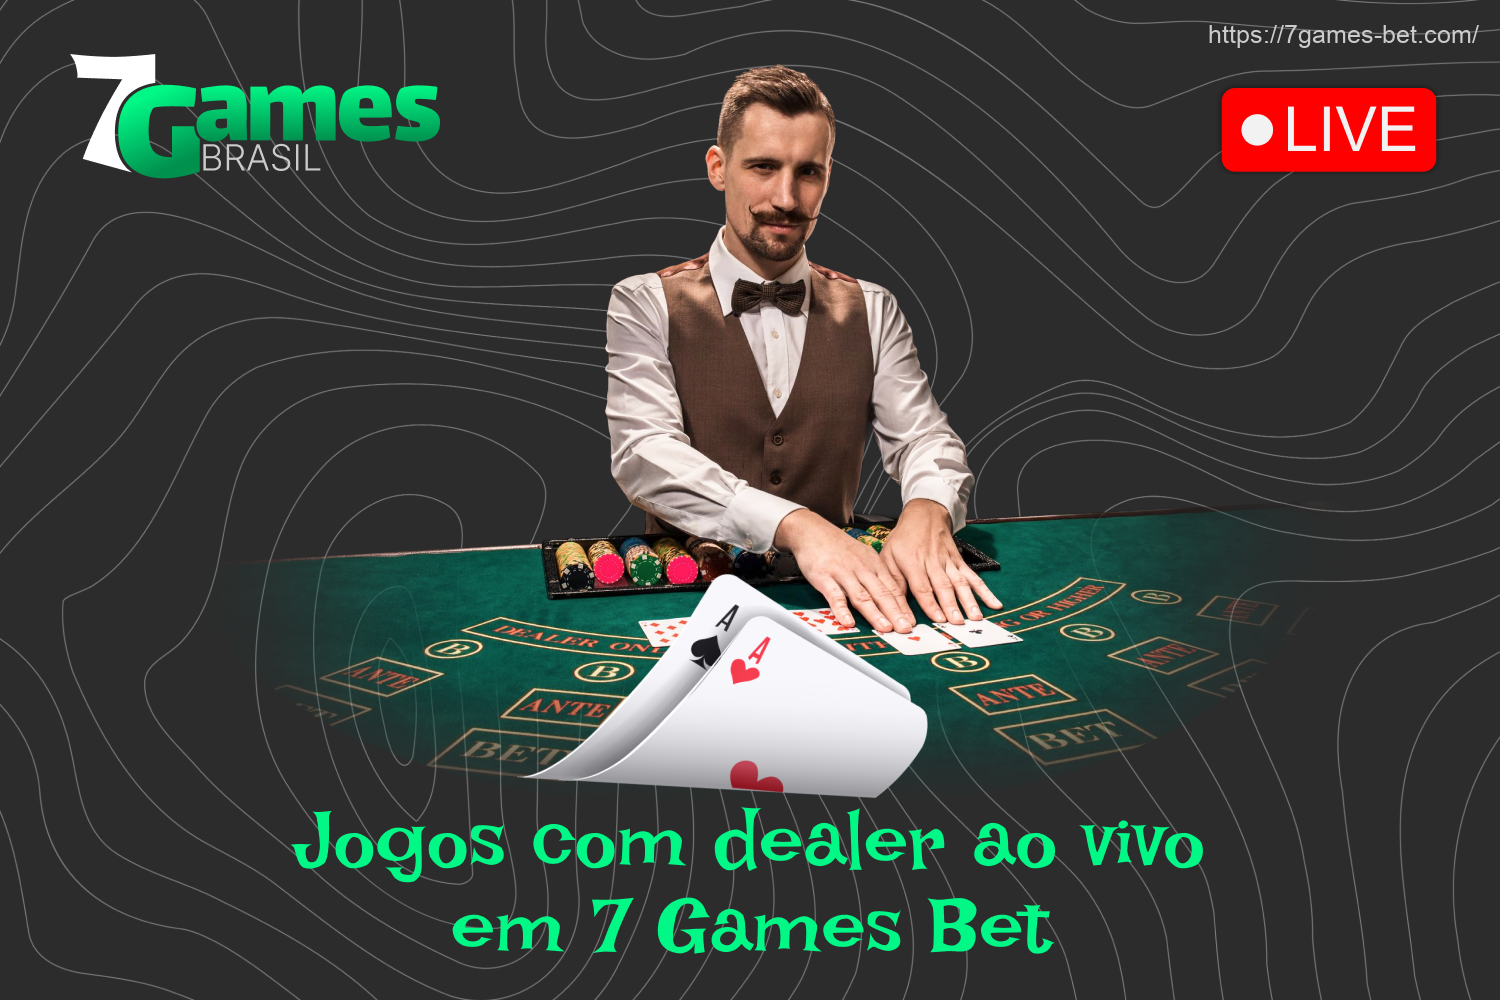 No 7Games Bet, os usuários brasileiros podem jogar jogos de cassino com dealers ao vivo